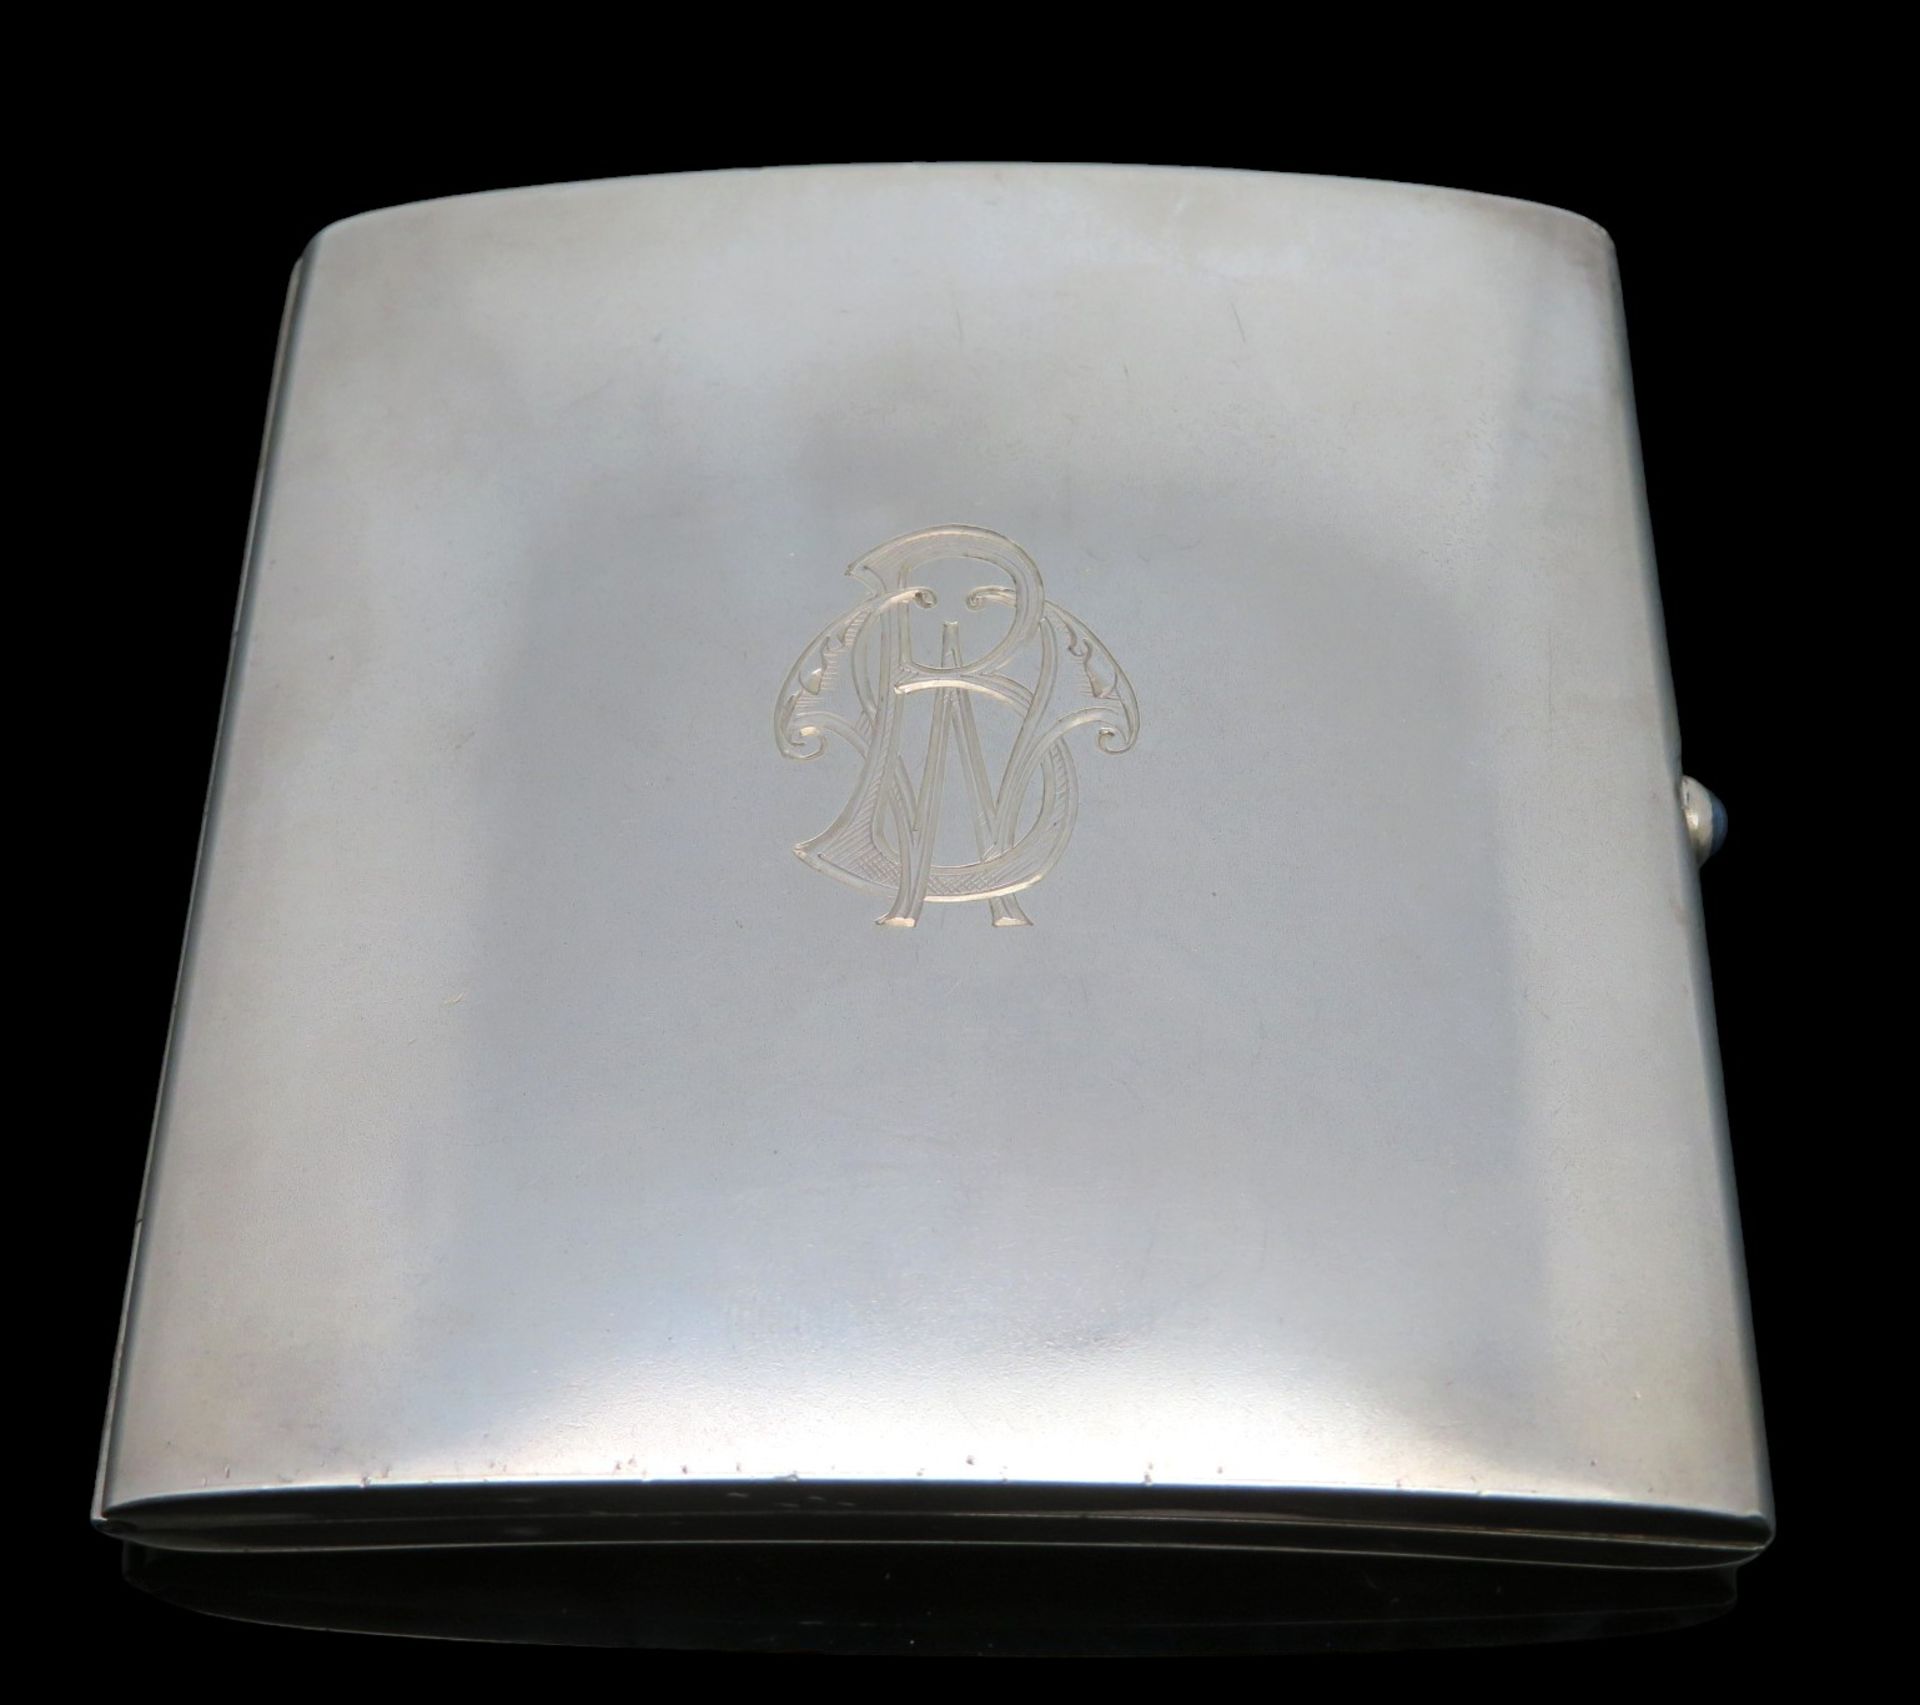 Elegantes Zigarettenetui, Deutsch, Monogrammgravur "BW", Silber 900/000, punziert, 100,36 g, Innenv